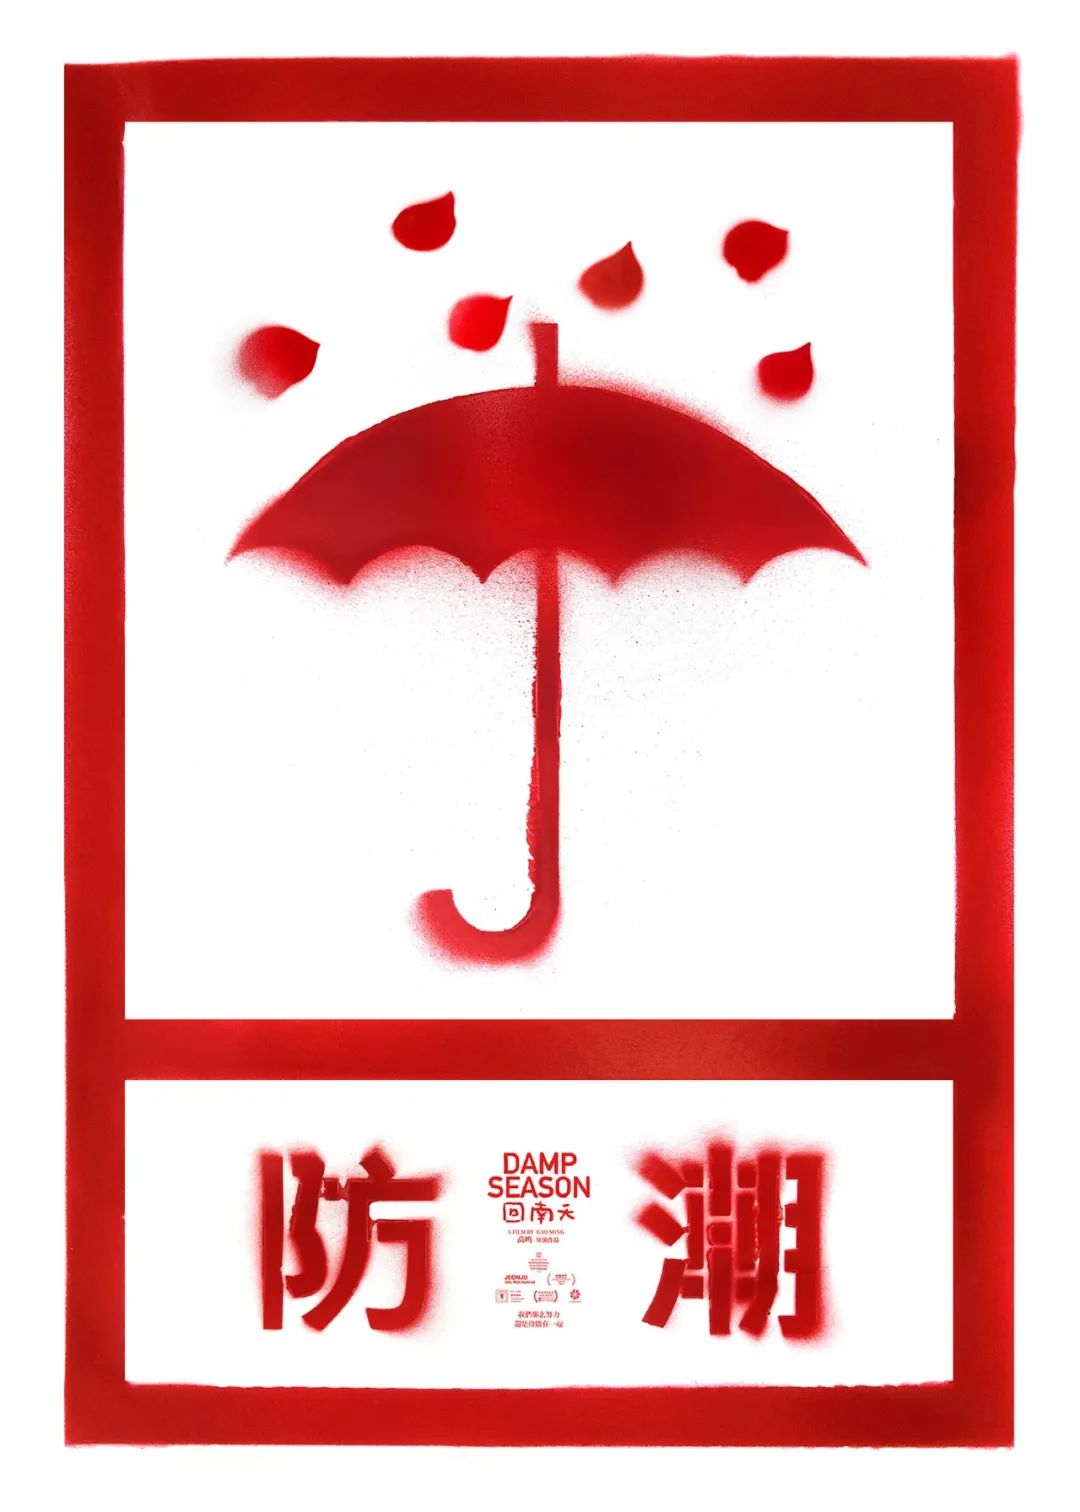 100位设计师共同设计《回南天》电影主题海报